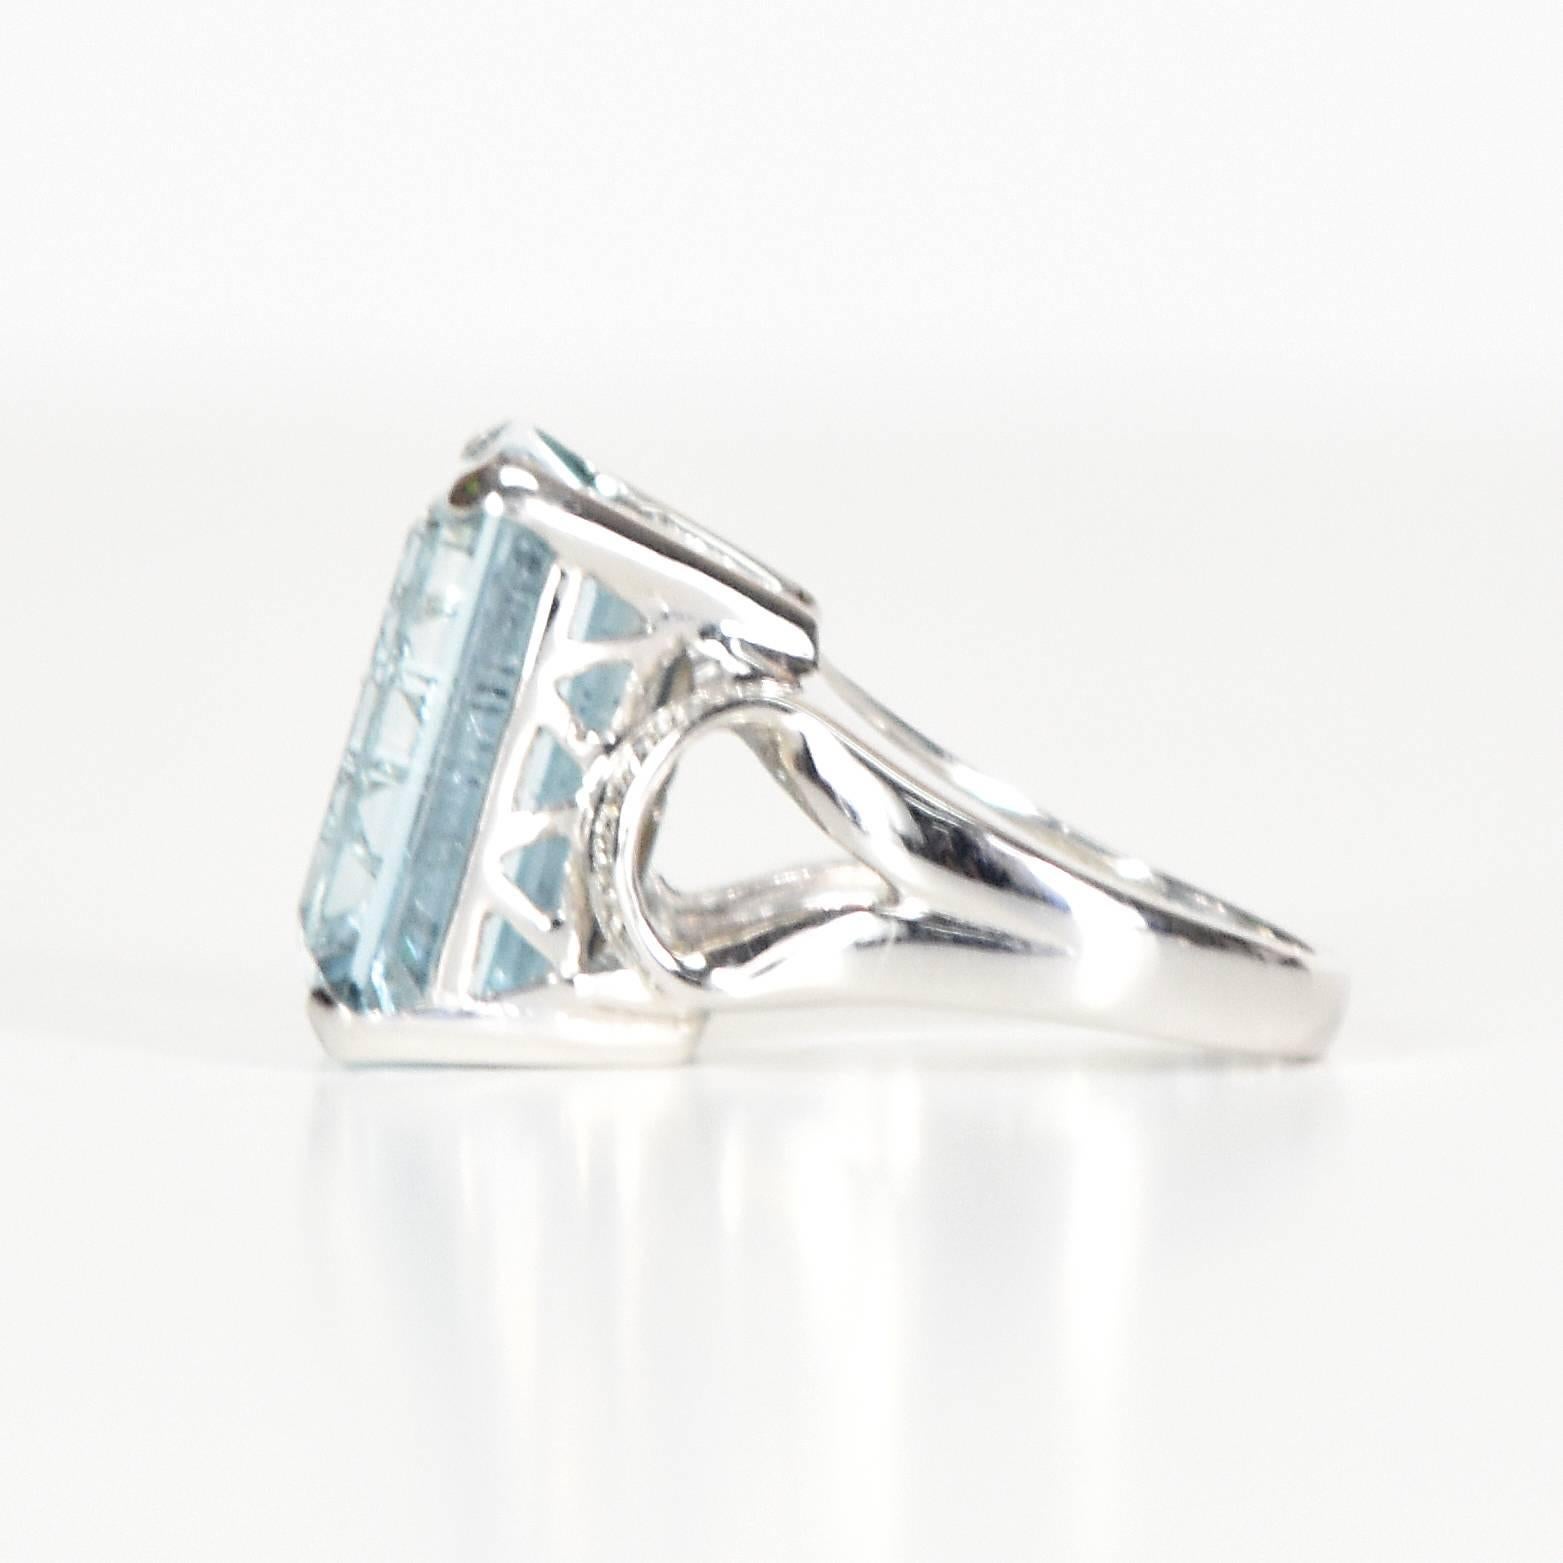 15 carat aquamarine ring